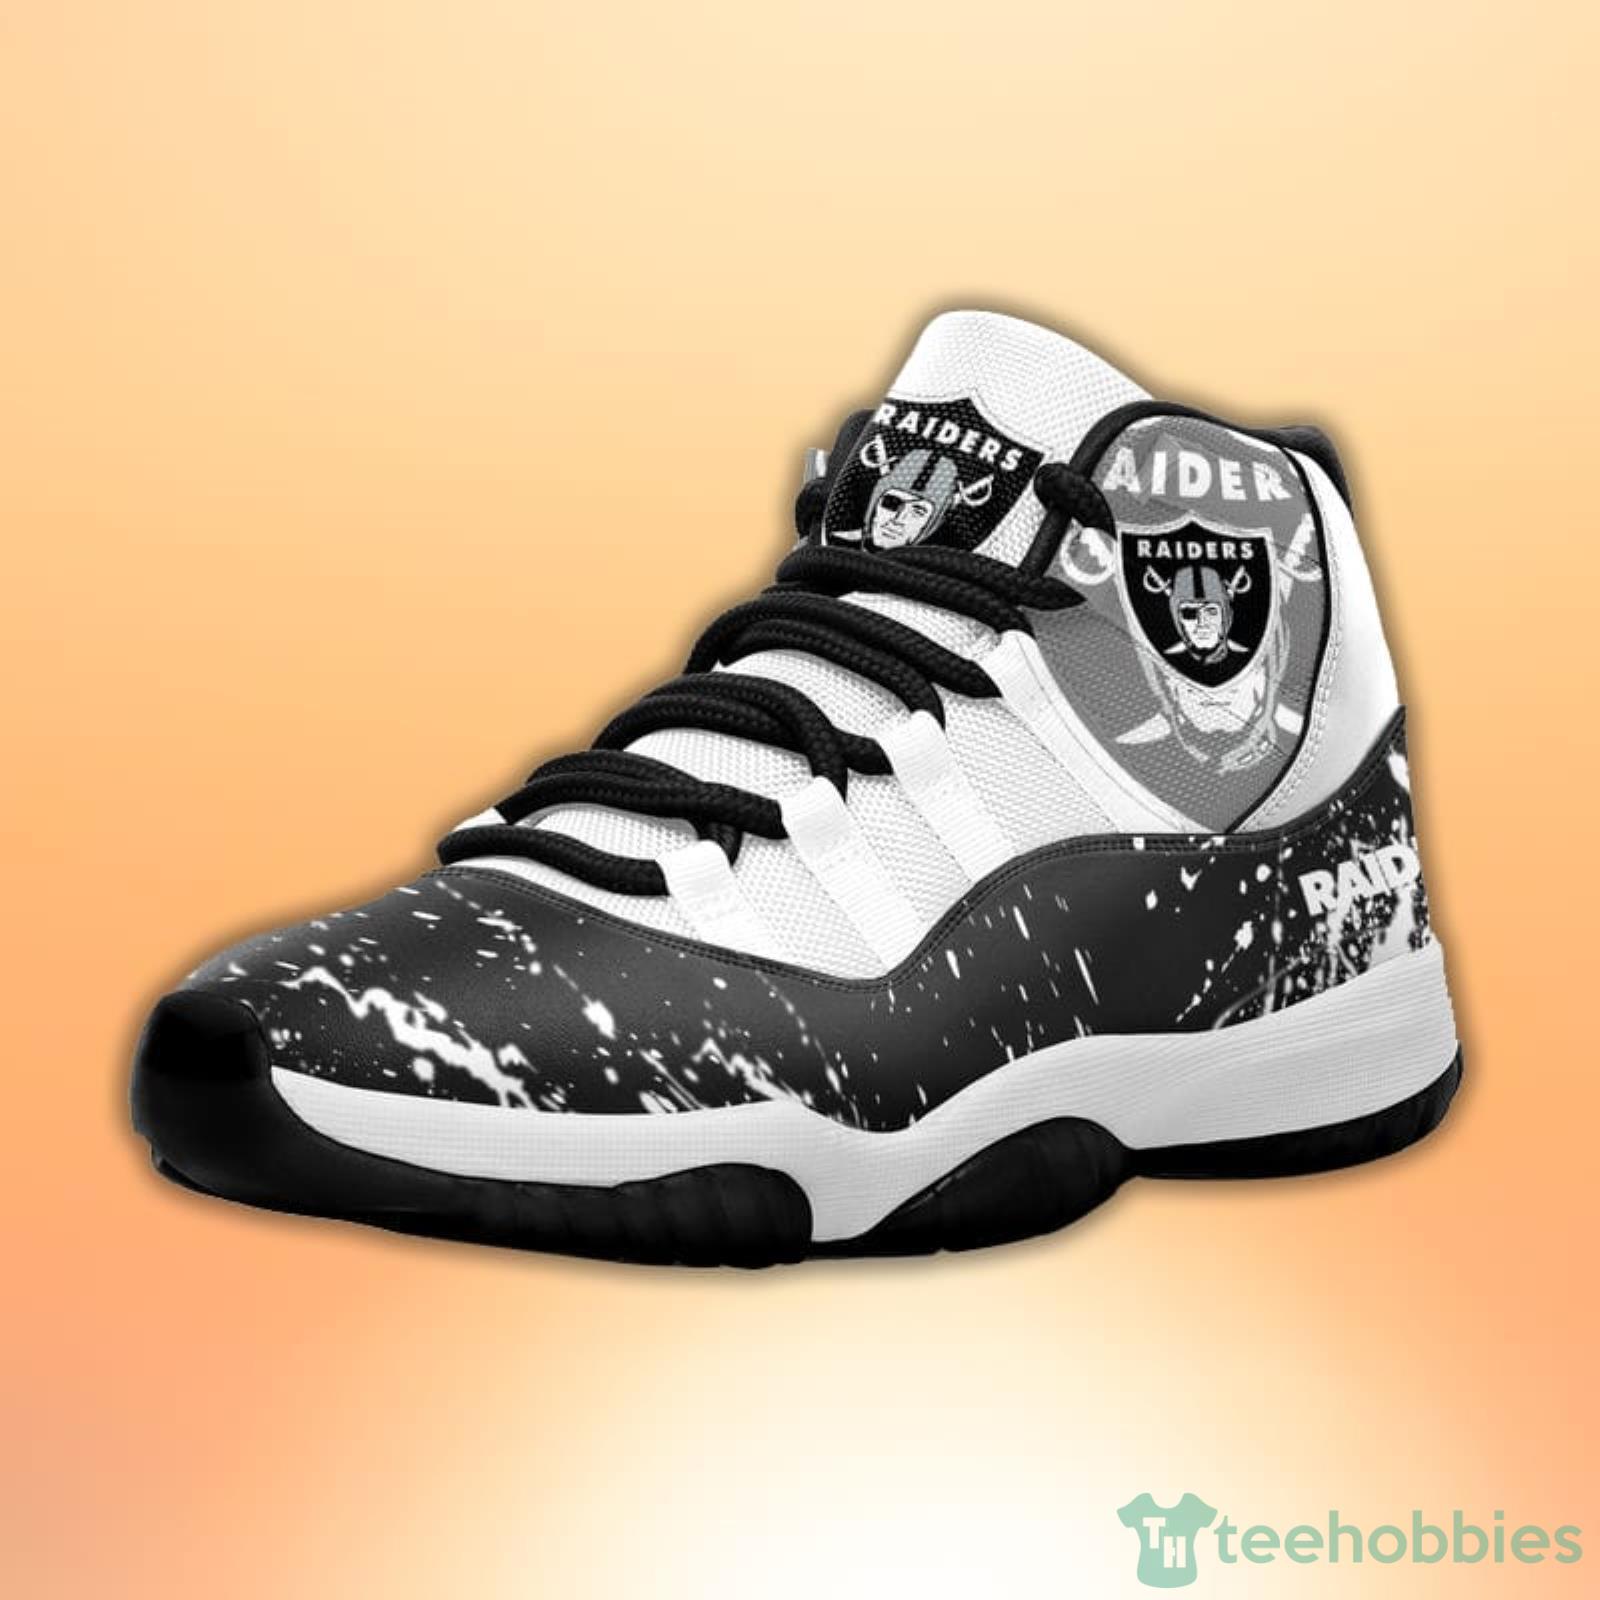 Las Vegas Raiders Custom Name Air Jordan 11 Sneaker Shoes For Sport Fans -  Banantees